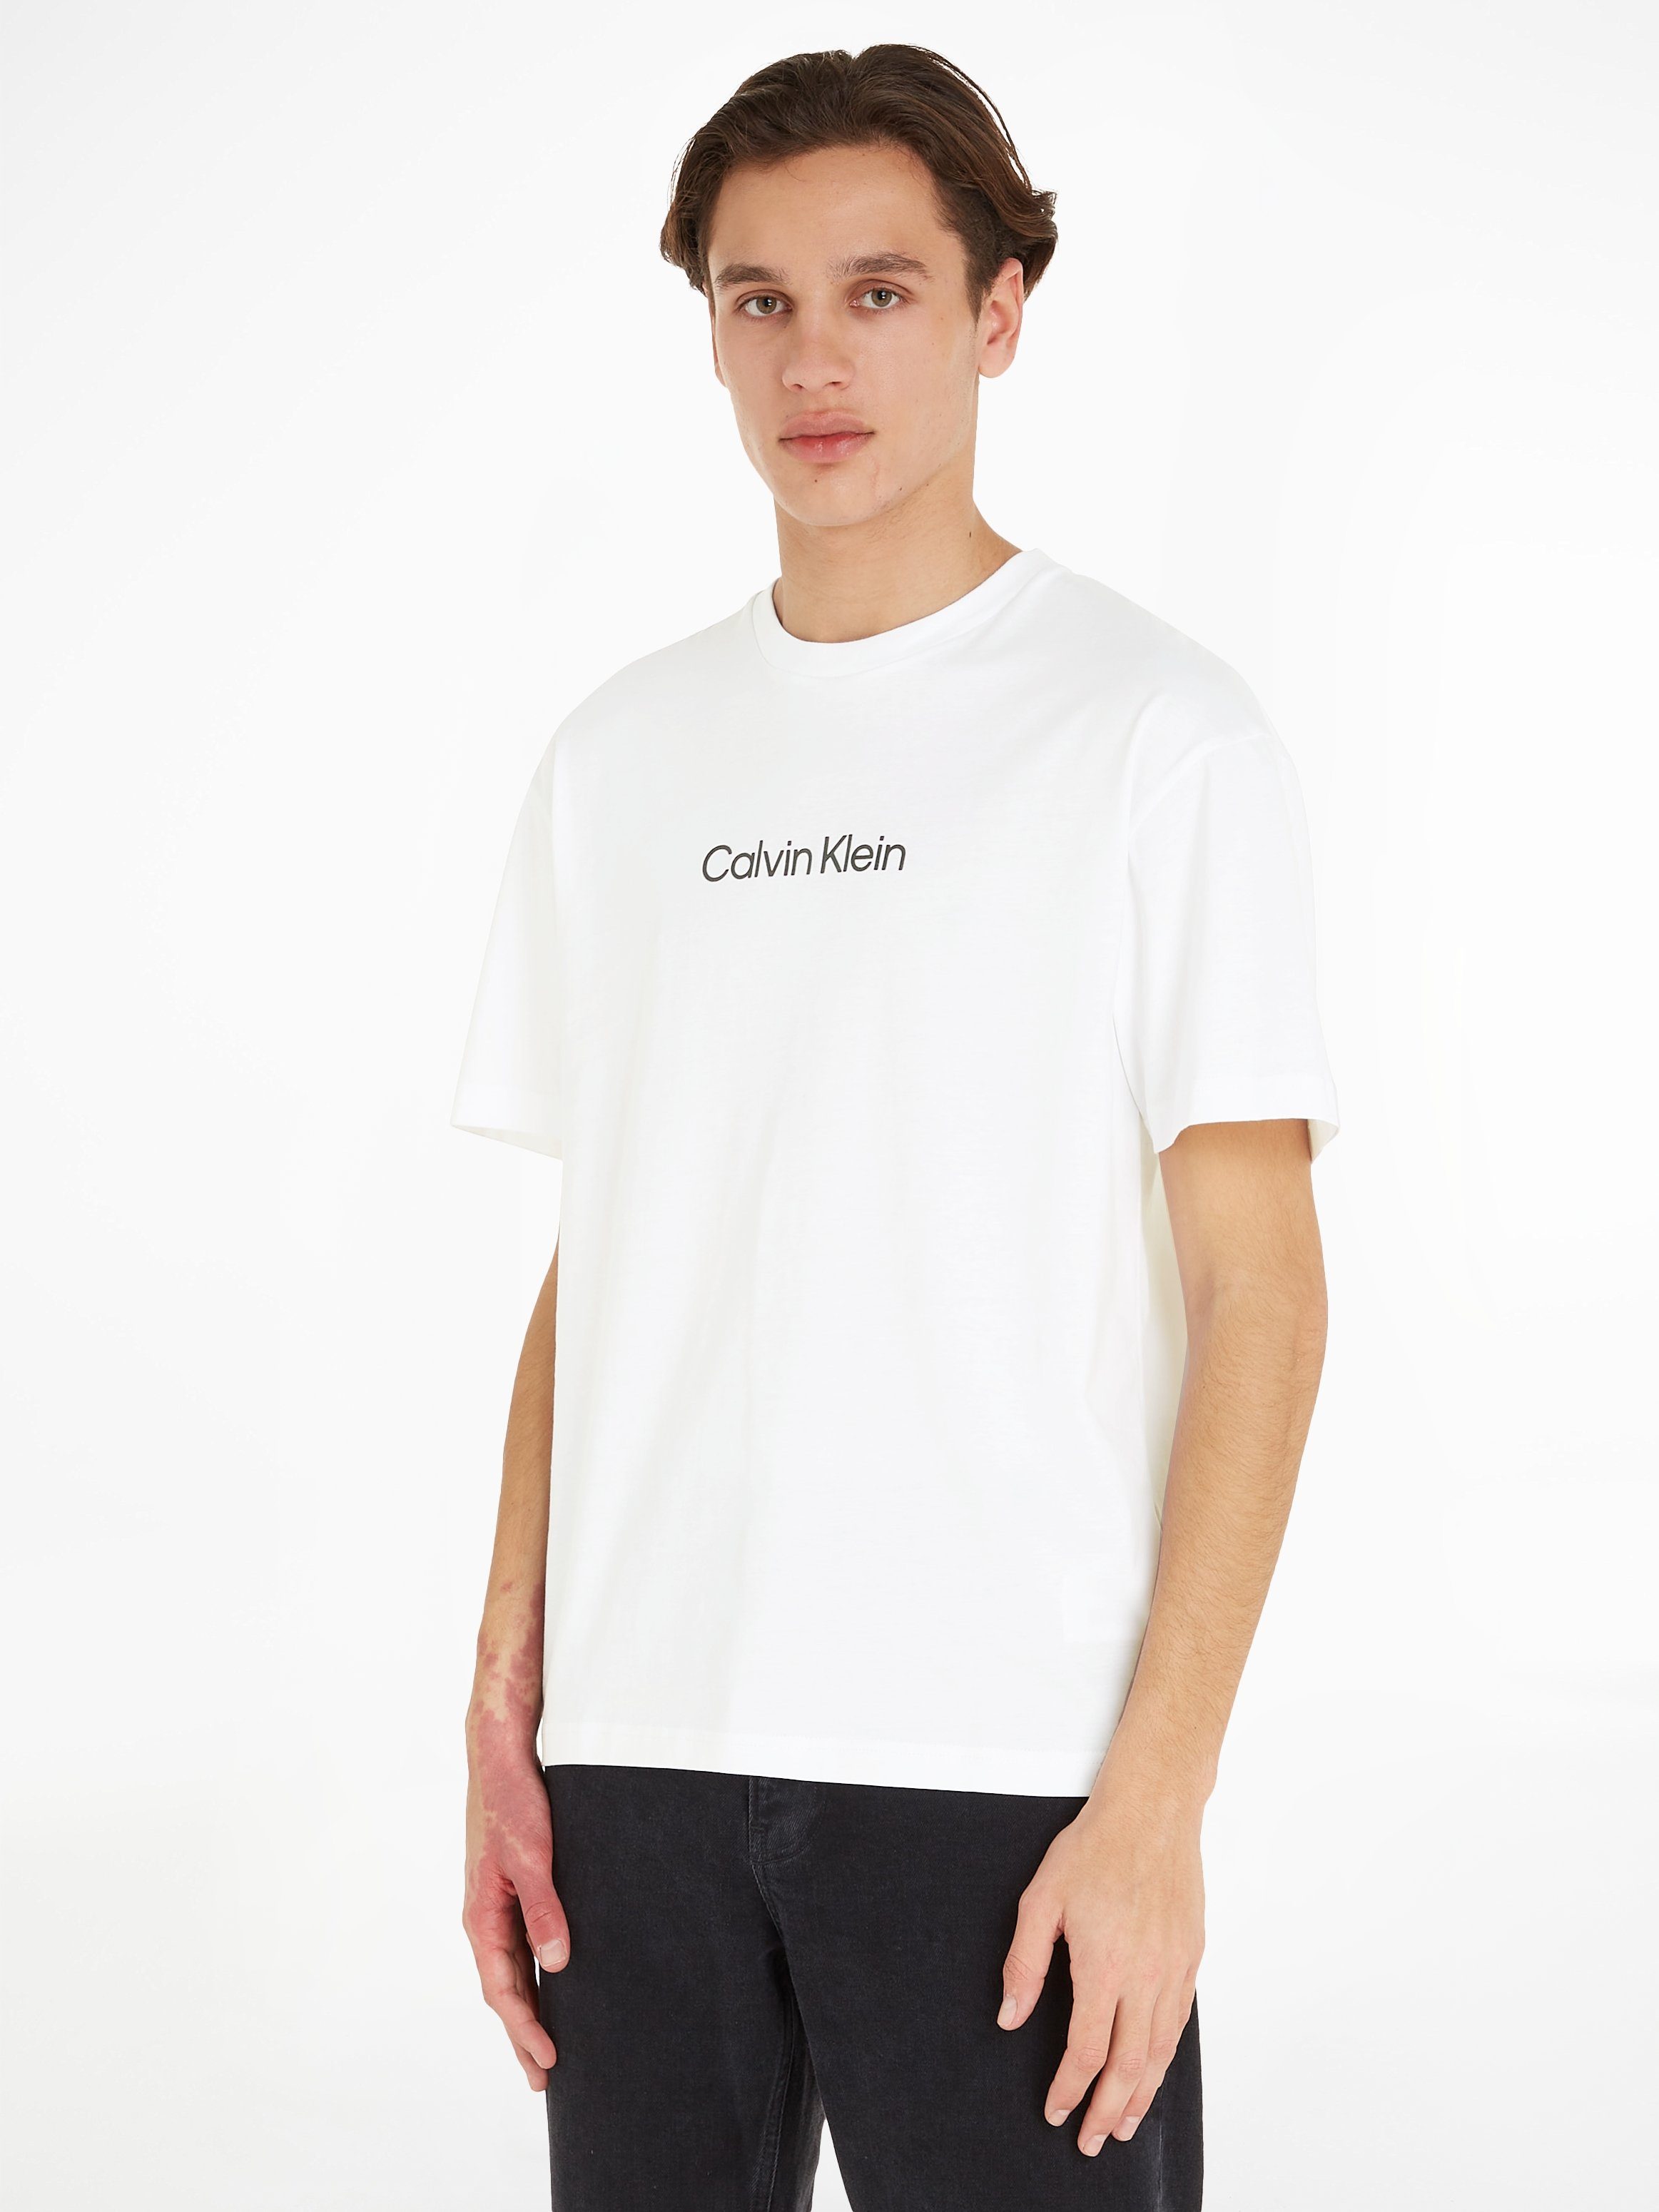 Calvin Klein T-Shirt HERO LOGO COMFORT T-SHIRT mit aufgedrucktem Markenlabel Bright White